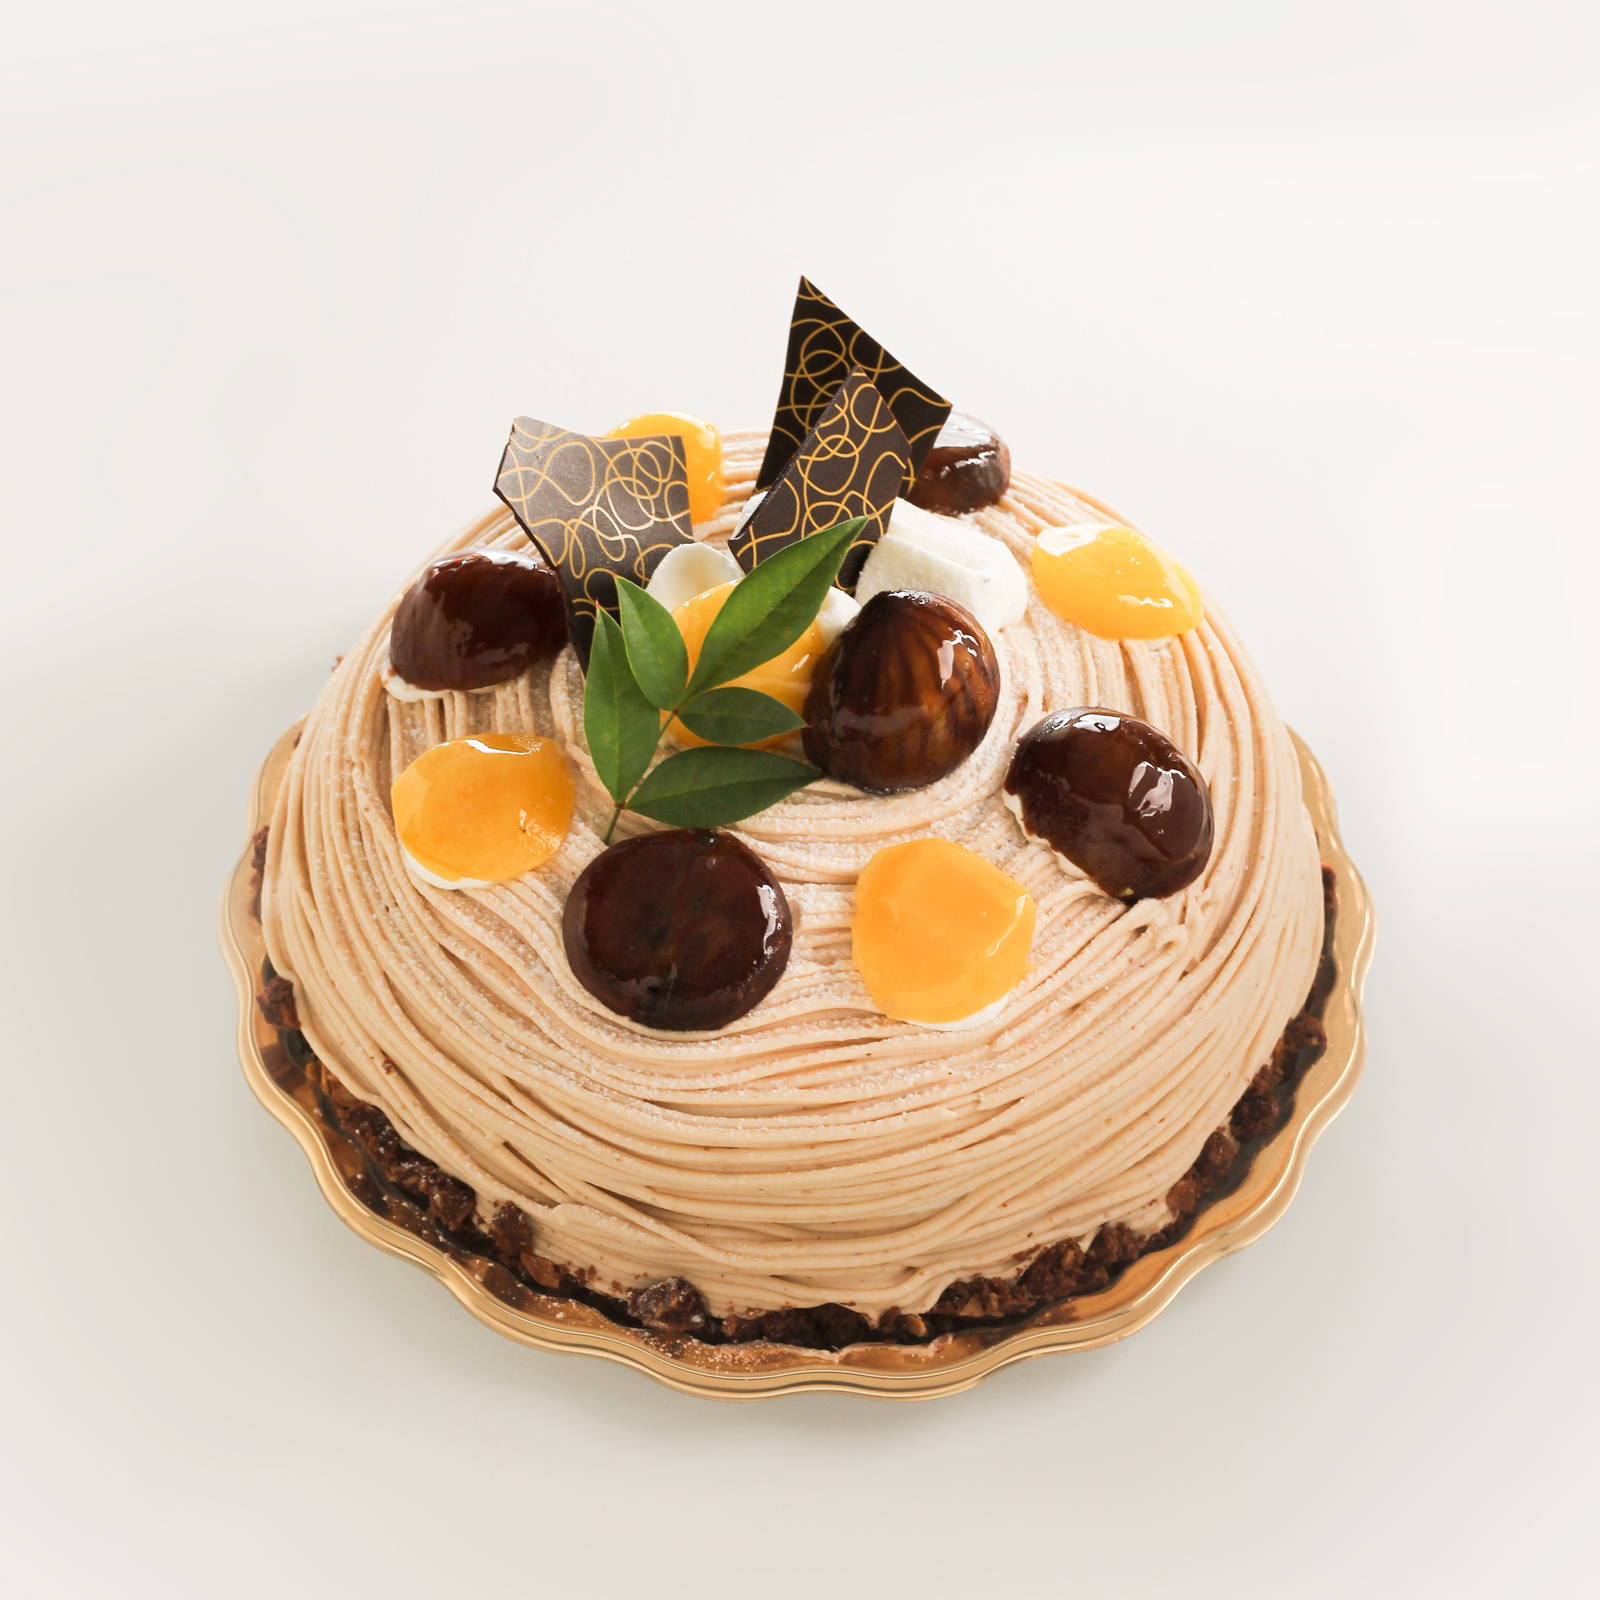 デコレーションケーキをリニューアルしました 洋菓子フィレンツェ 名古屋のケーキ屋さん洋菓子フィレンツェ 名古屋のケーキ屋さん